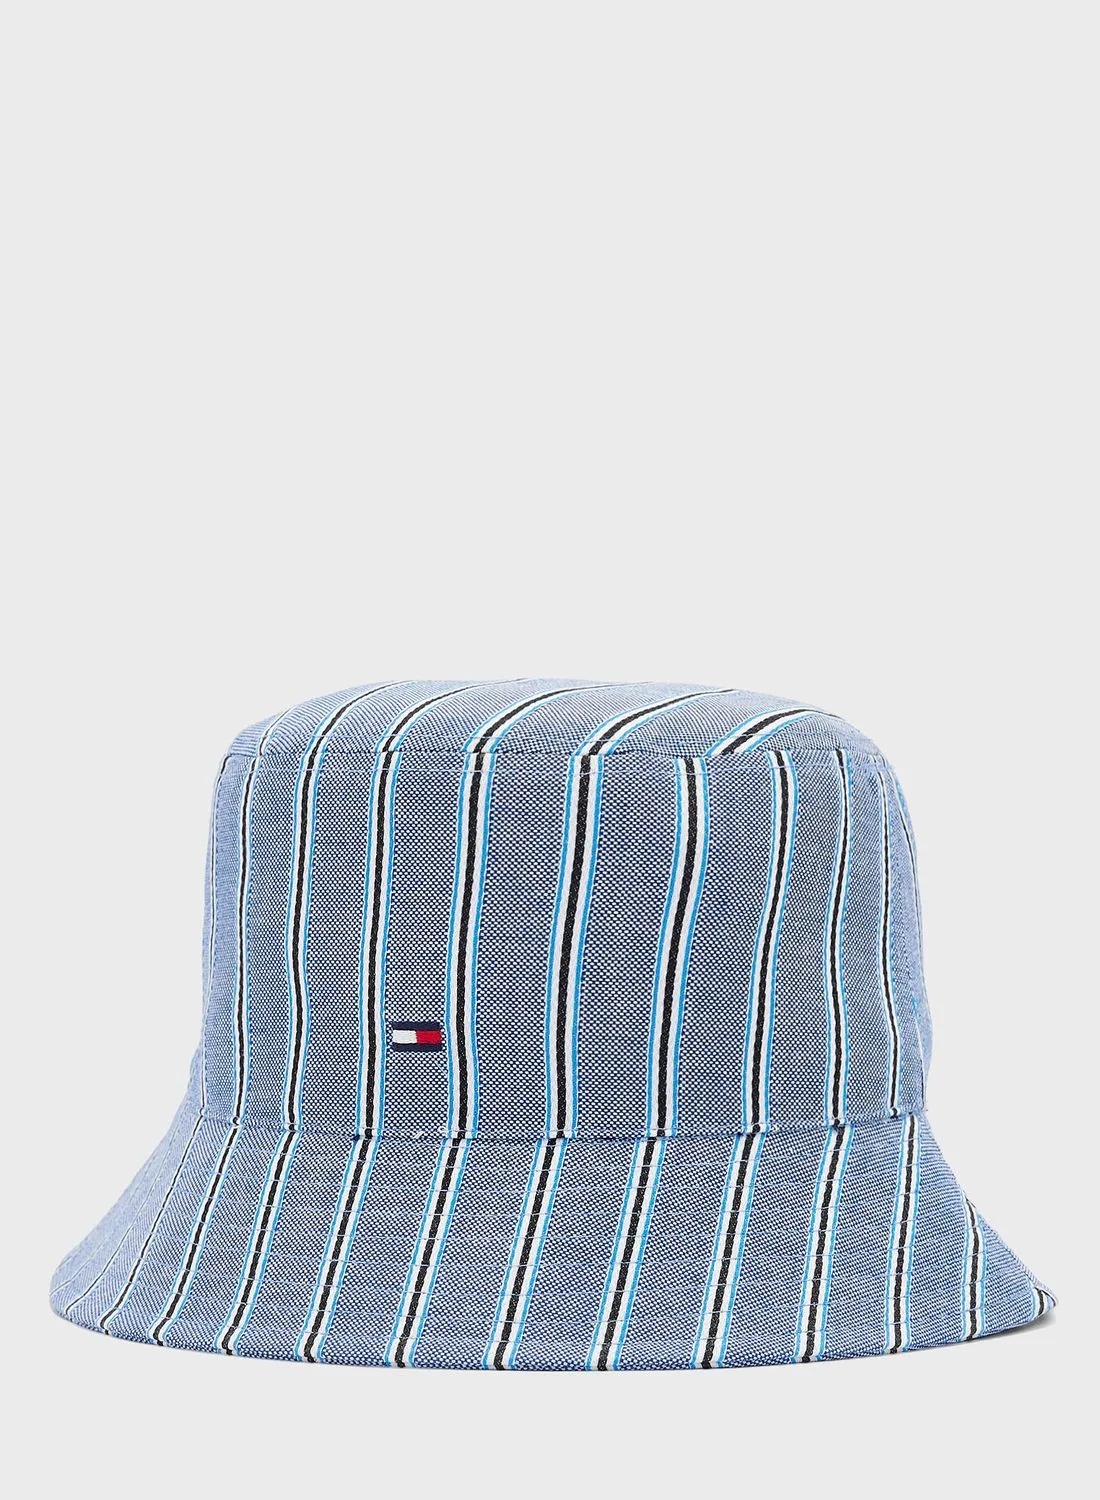 قبعة دلو تومي هيلفيغر